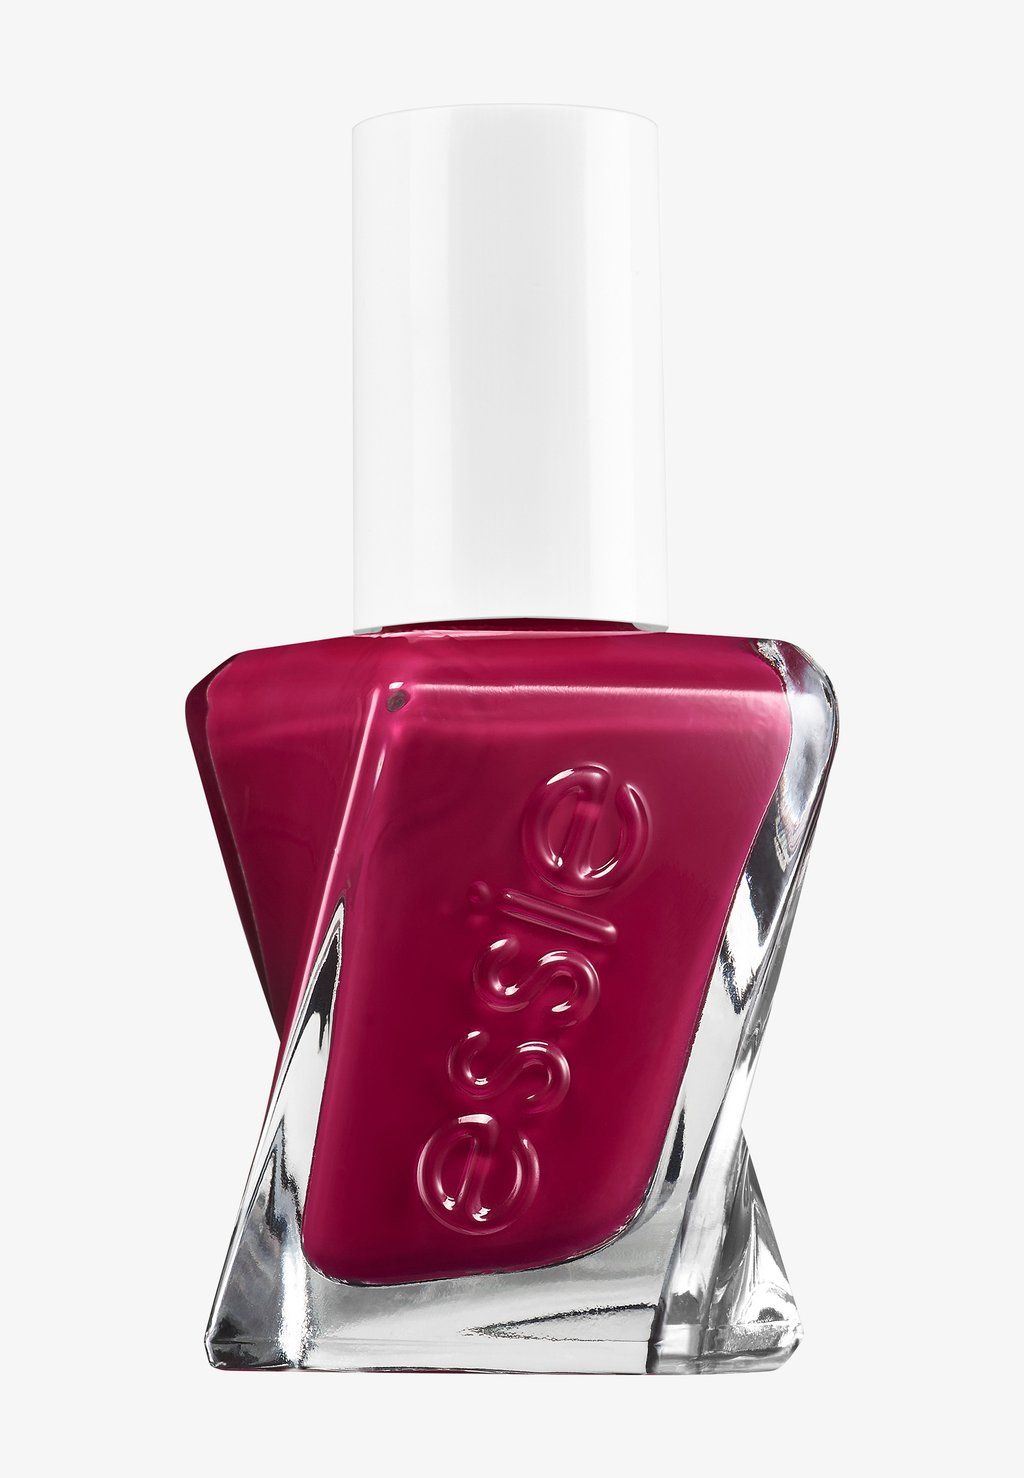 Уход за ногтями Nailpolish Gel Couture Essie, цвет chevron trend